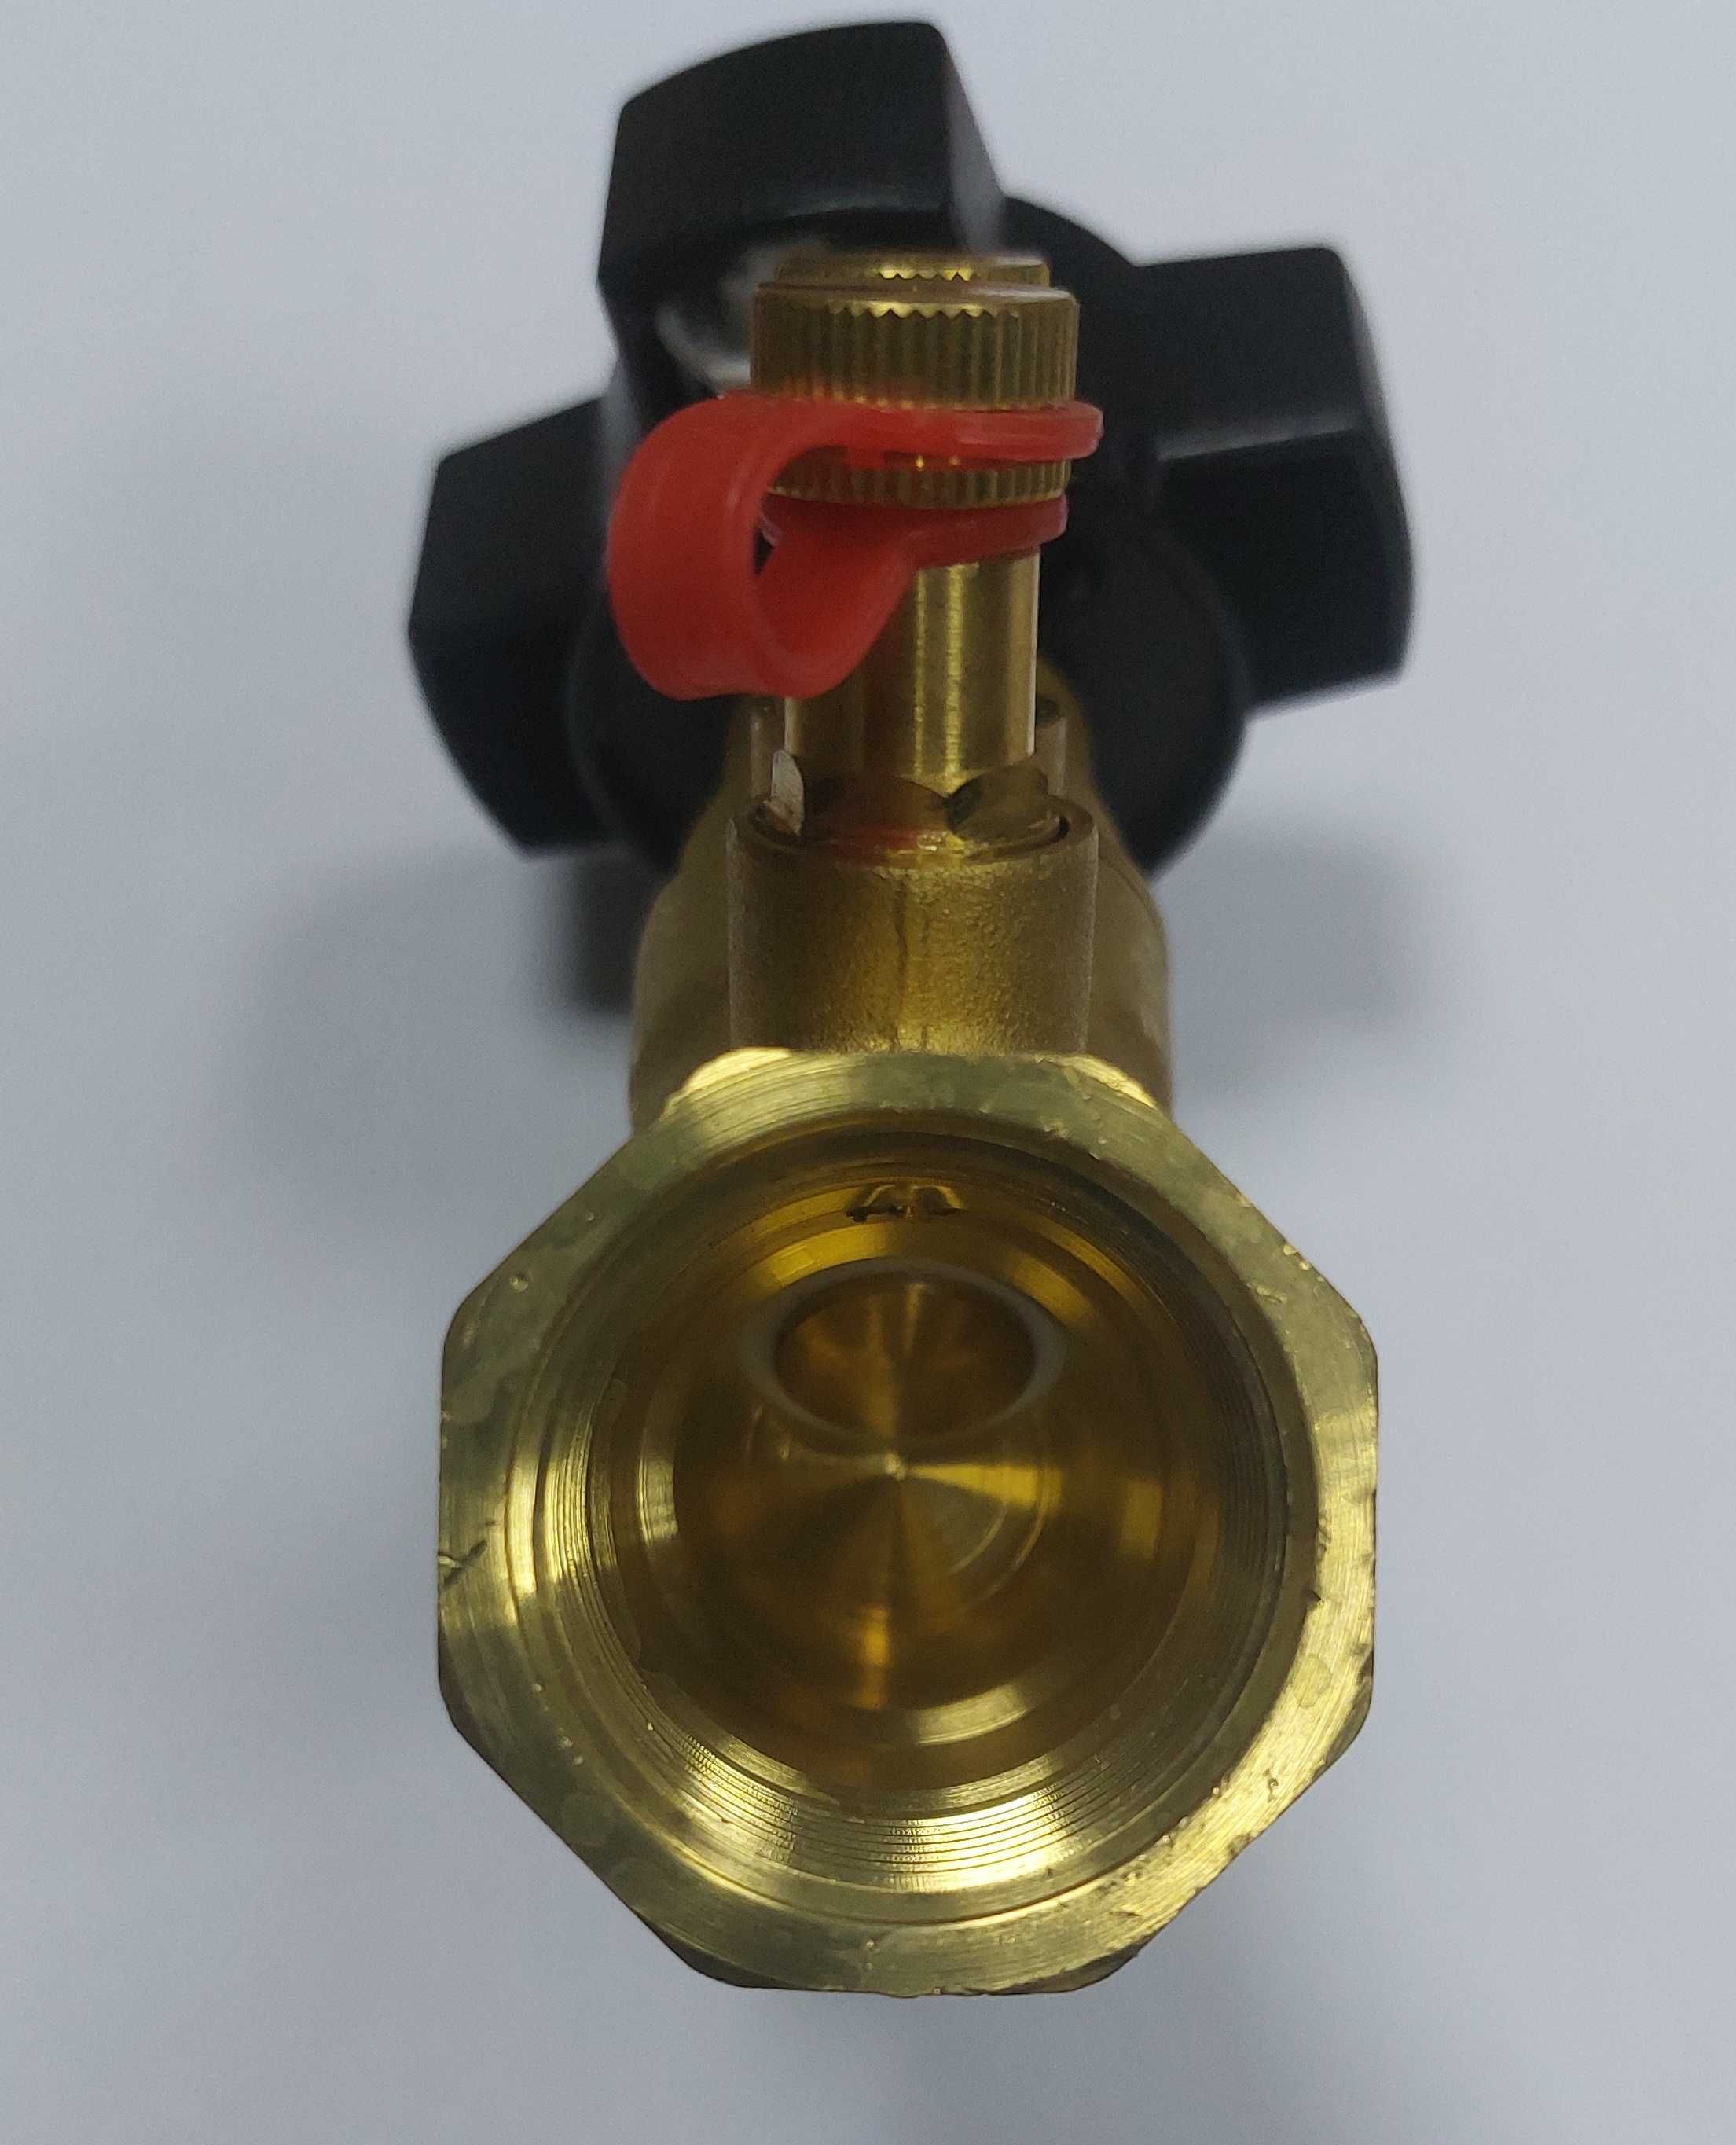 Клапан балансировочный балансир регулятор системы отопления Ду25